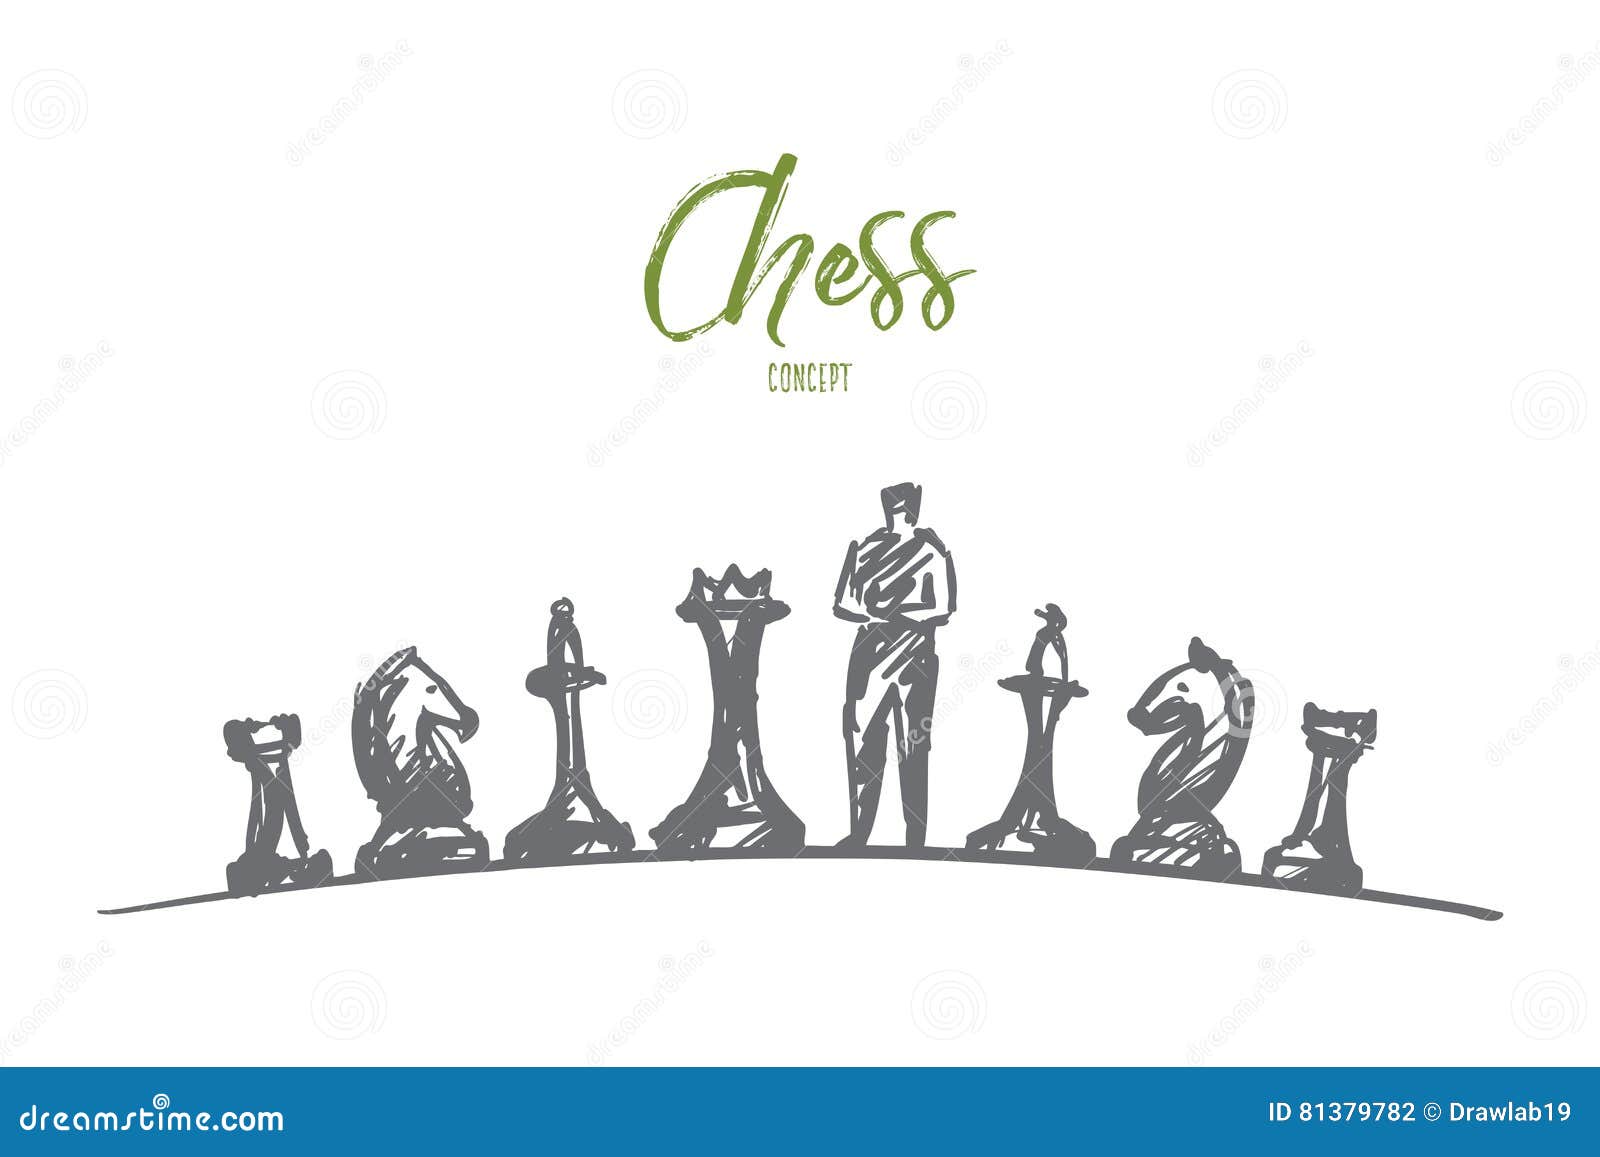 Hand Drawn Man Standing Between Chessmen Stock Vector